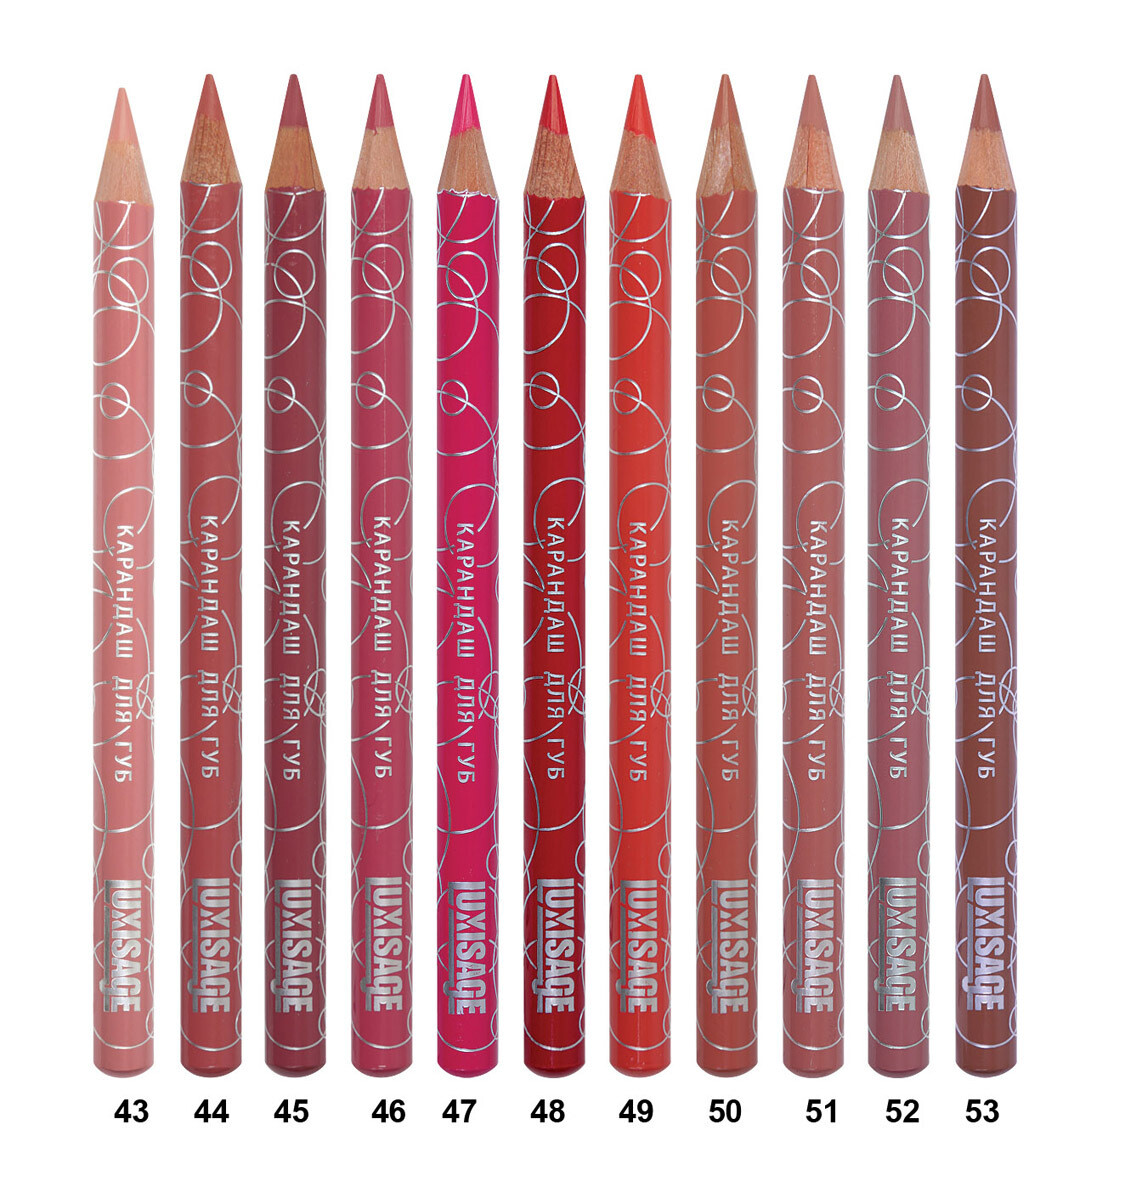 карандаши для губ цвета фото